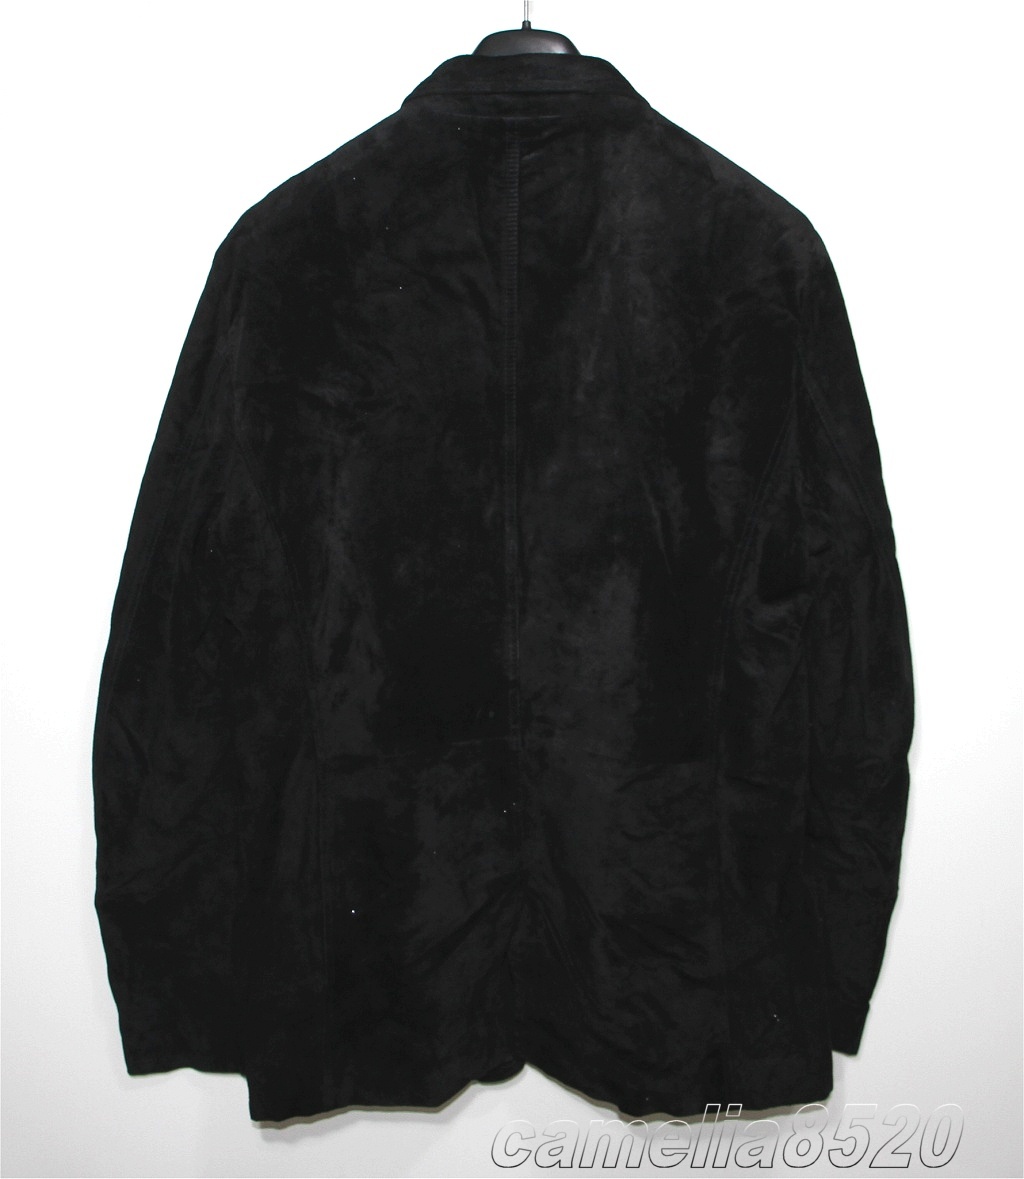 BALLY バリー レザージャケット ス テーラードジャケット ブレザートップ 黒 ブラック スエード US 46 EU 56 サイズ XL イタリア製 美品_画像2